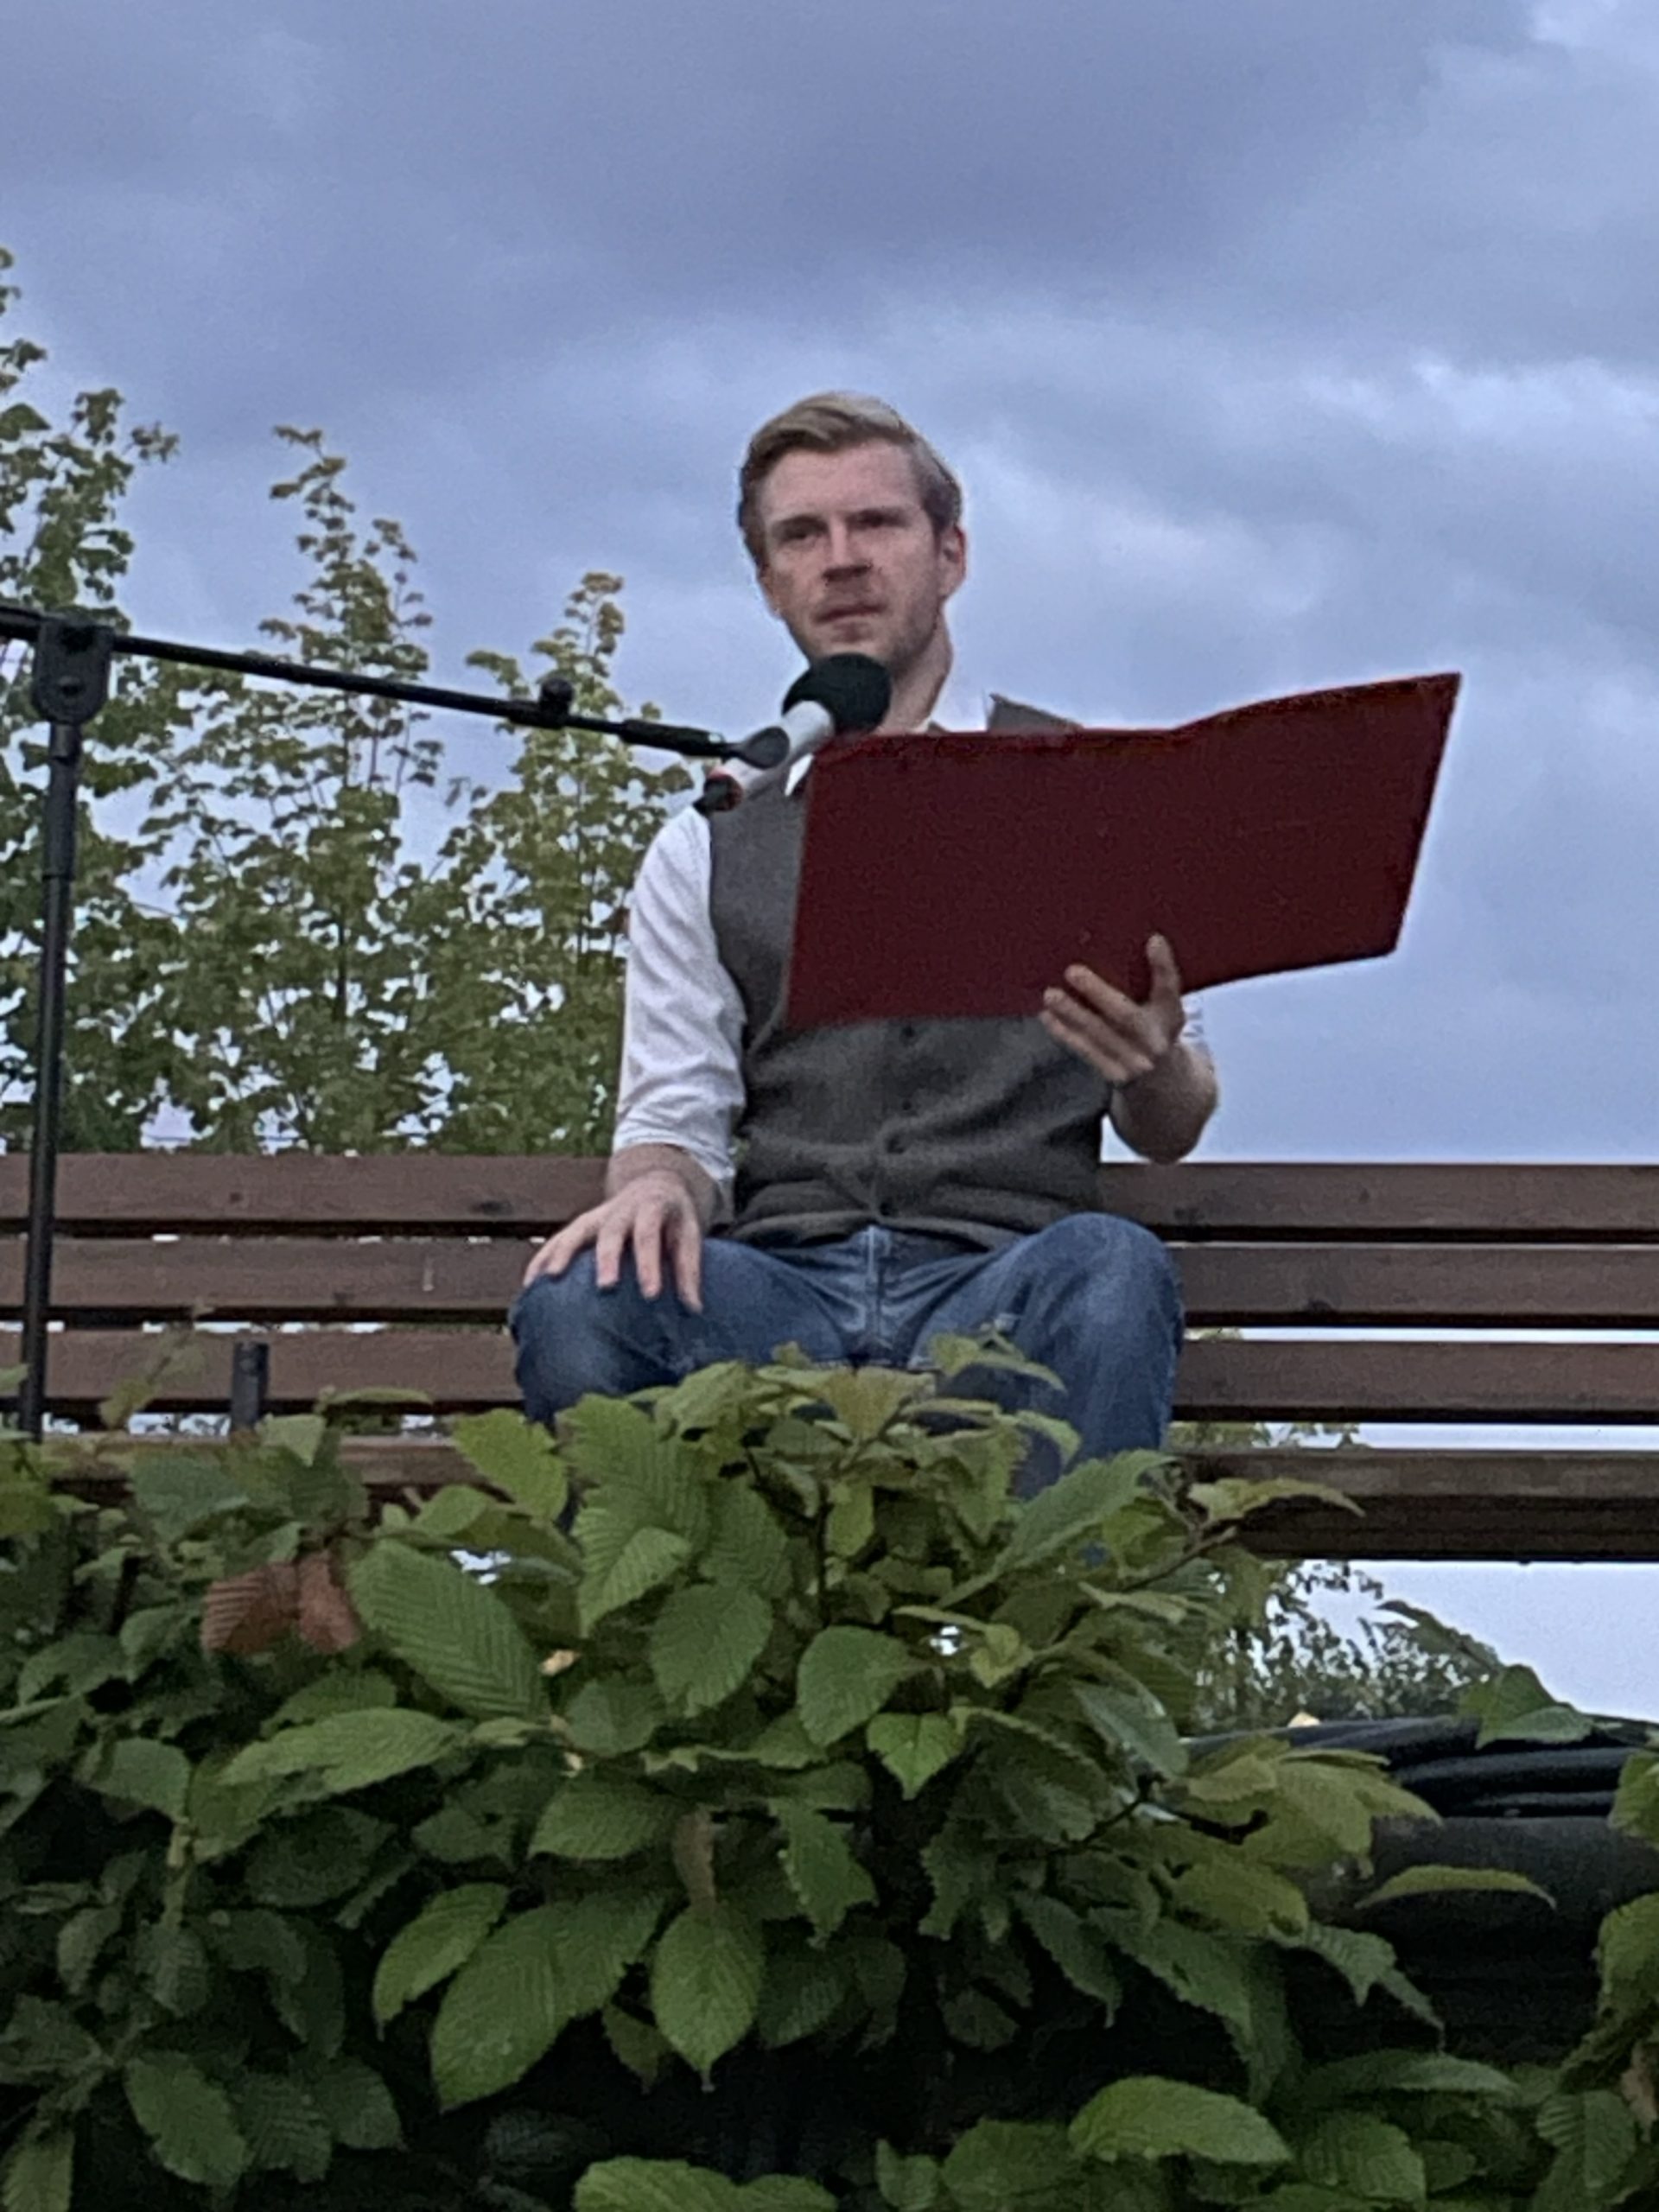 Der Gedichte Lesende auf einer Bank im halbdunkelnen